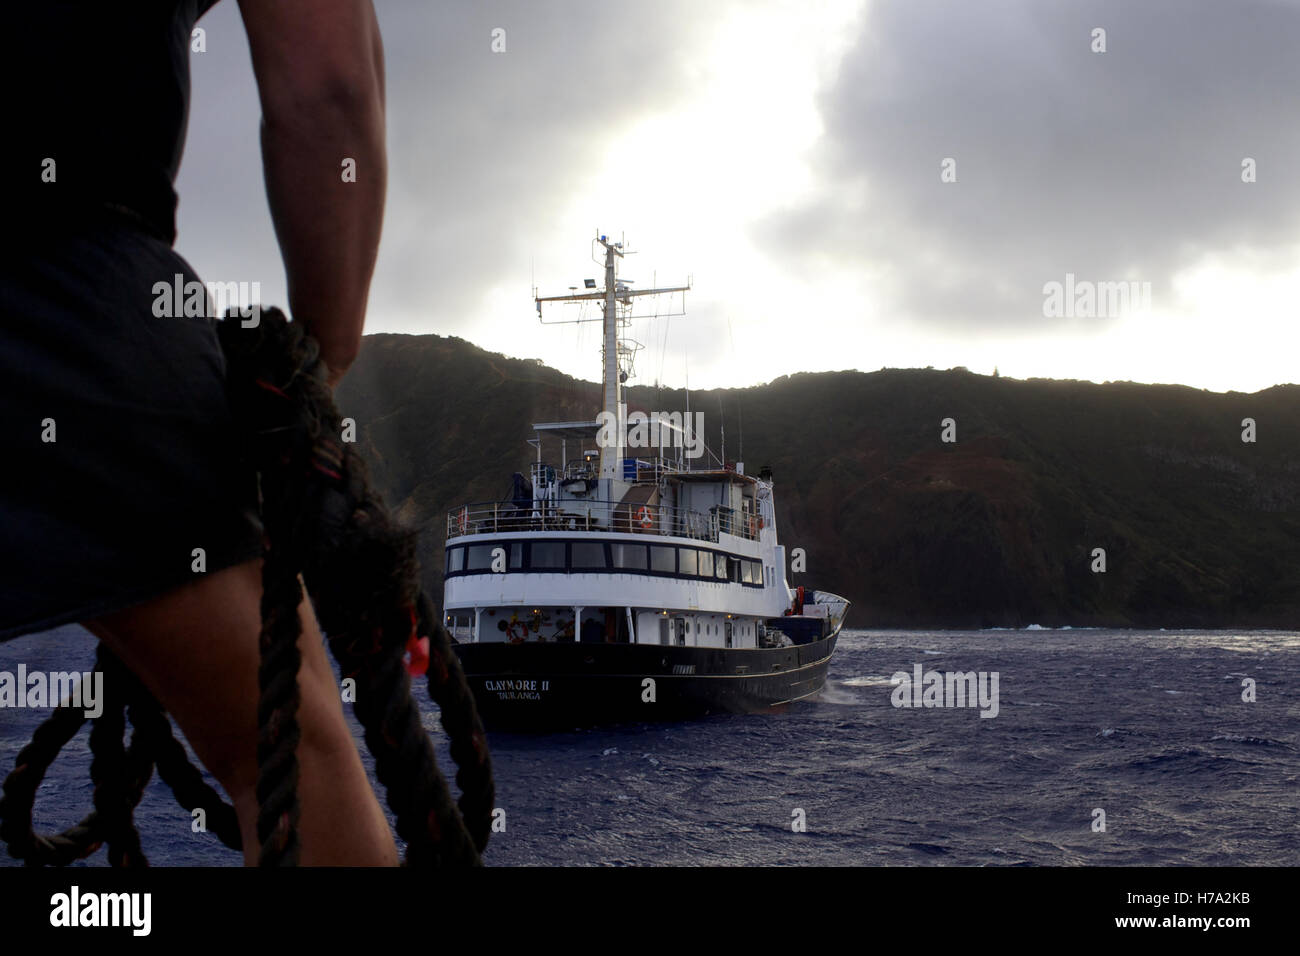 Pitcairn, Söhne von Meuterern! -07/06/2012 - Pitcairn / Pitcairn - Menschen, die Einschiffung auf die Claymore II verlassen Pitcairn Insel - Olivier Goujon / Le Pictorium Stockfoto